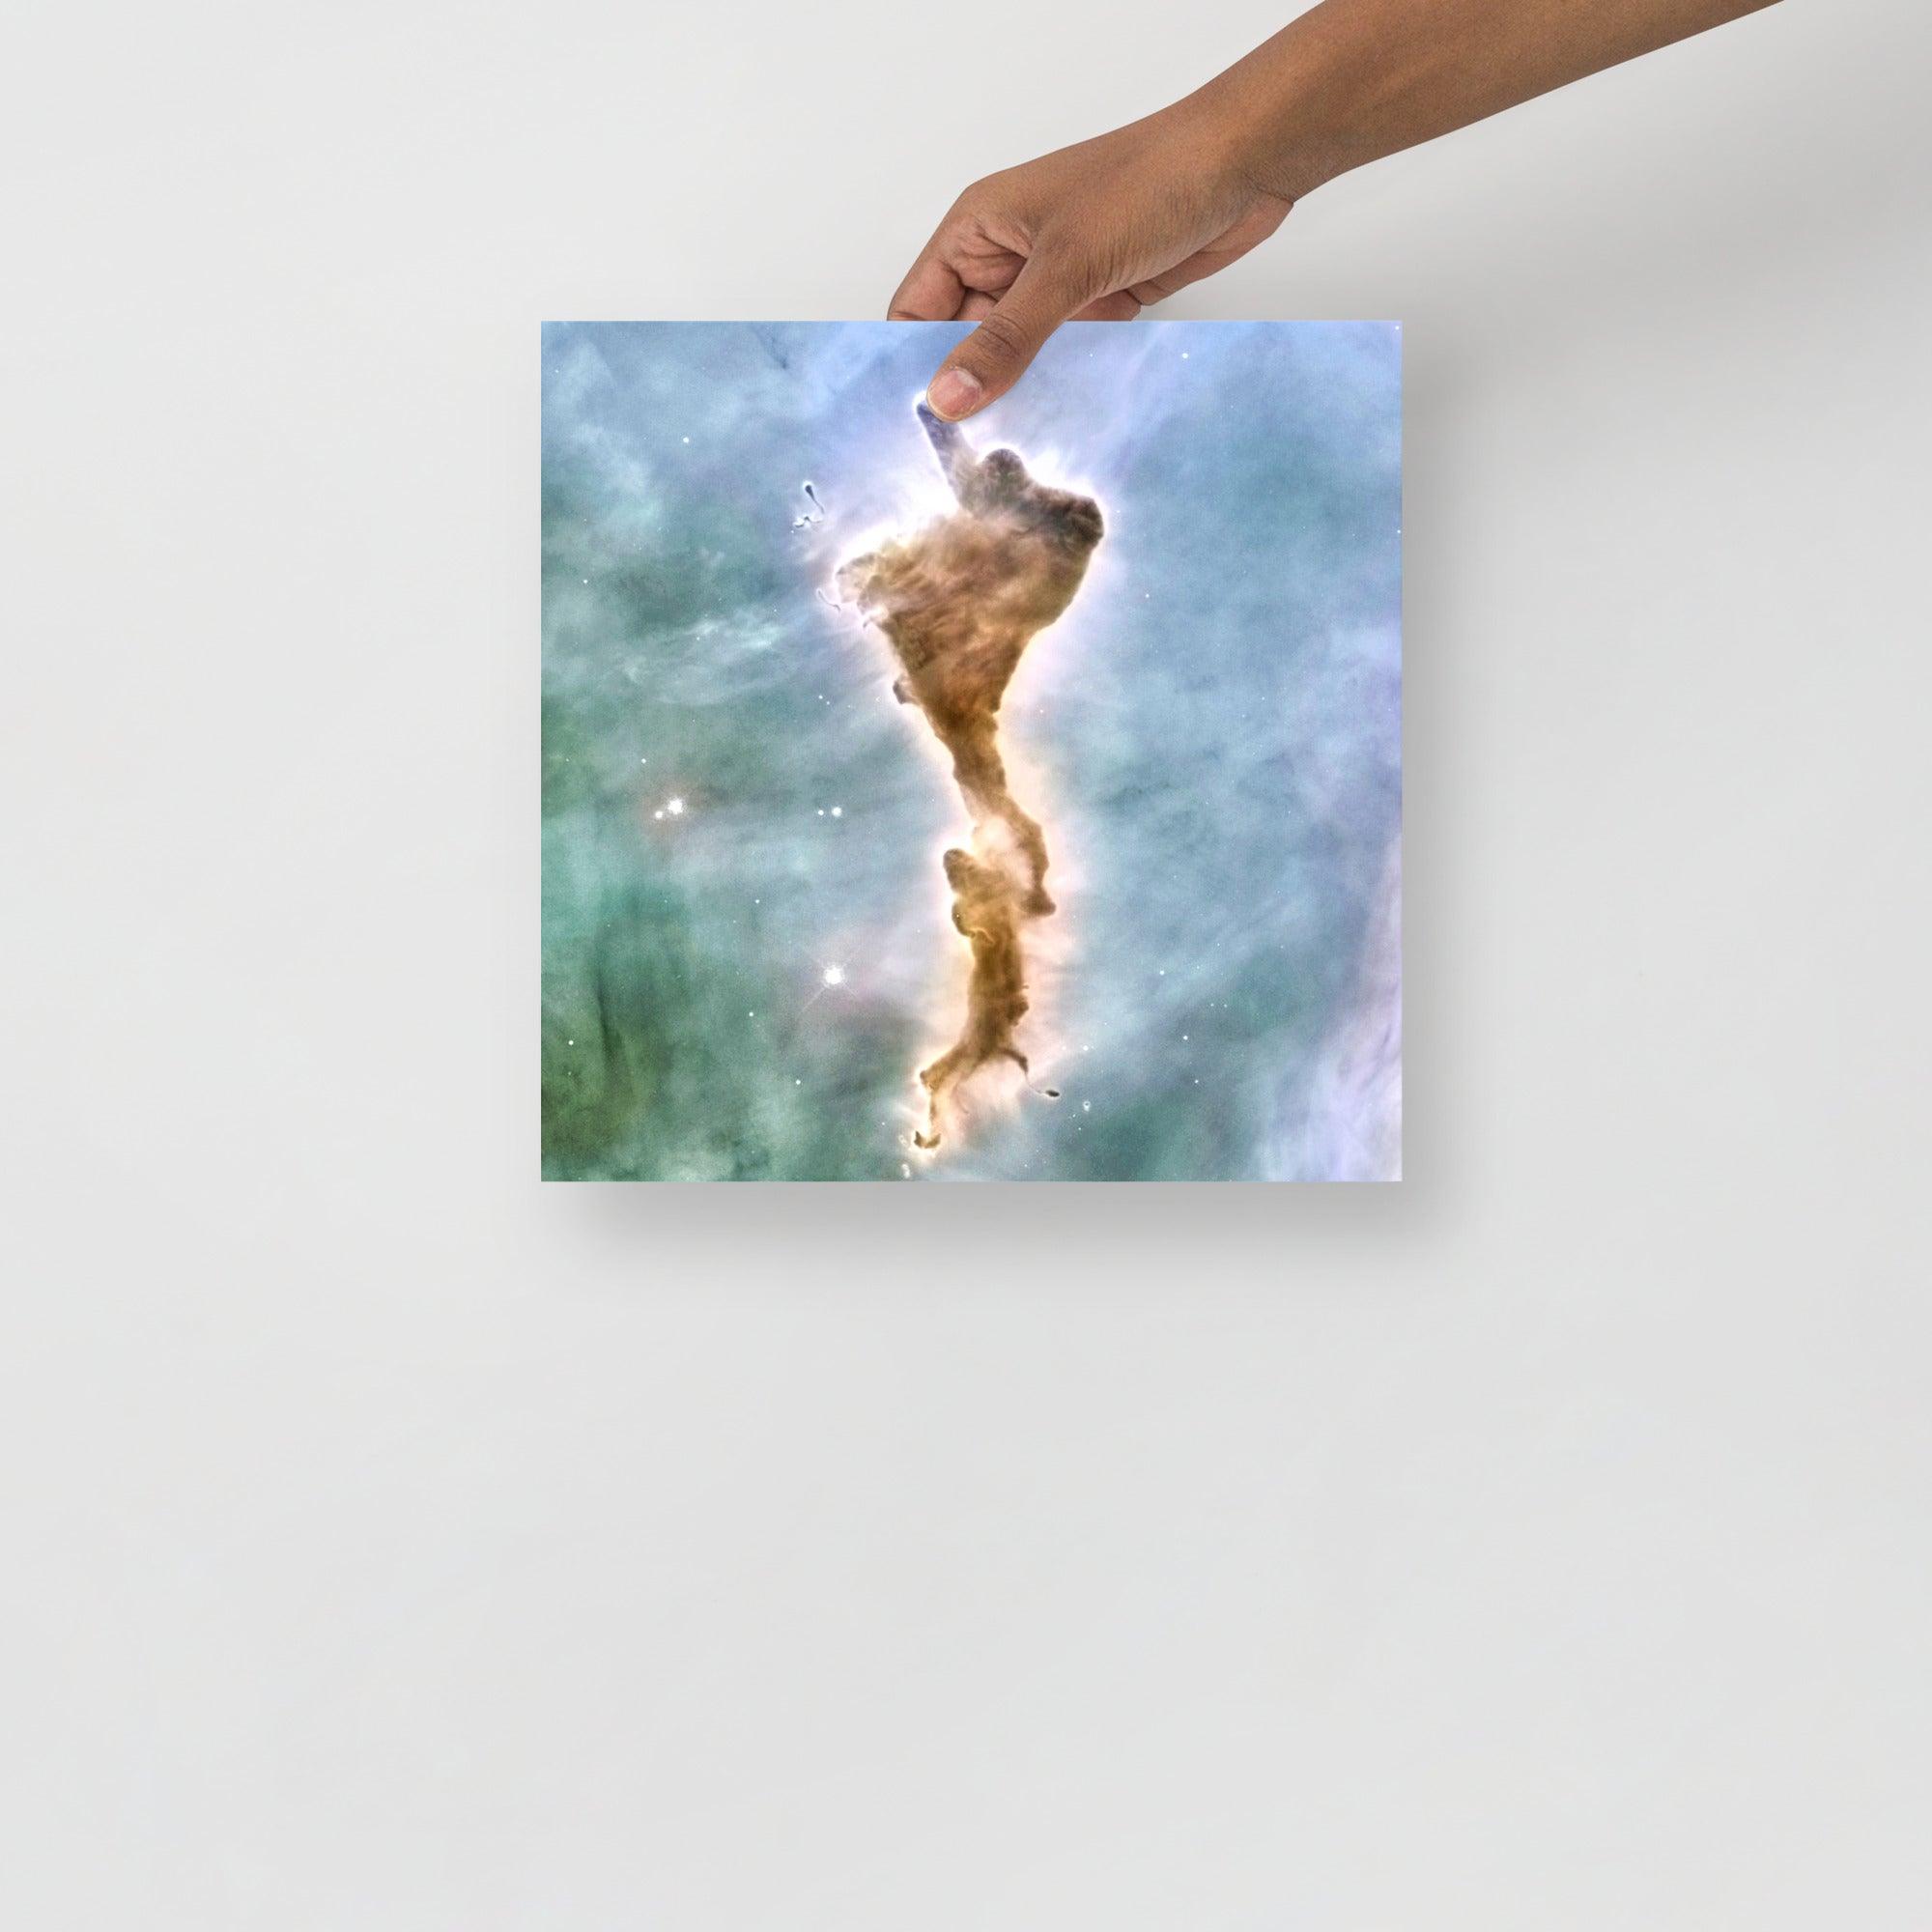 A Finger of God (Carina Nebula) poster on a plain backdrop in size 12x12”.